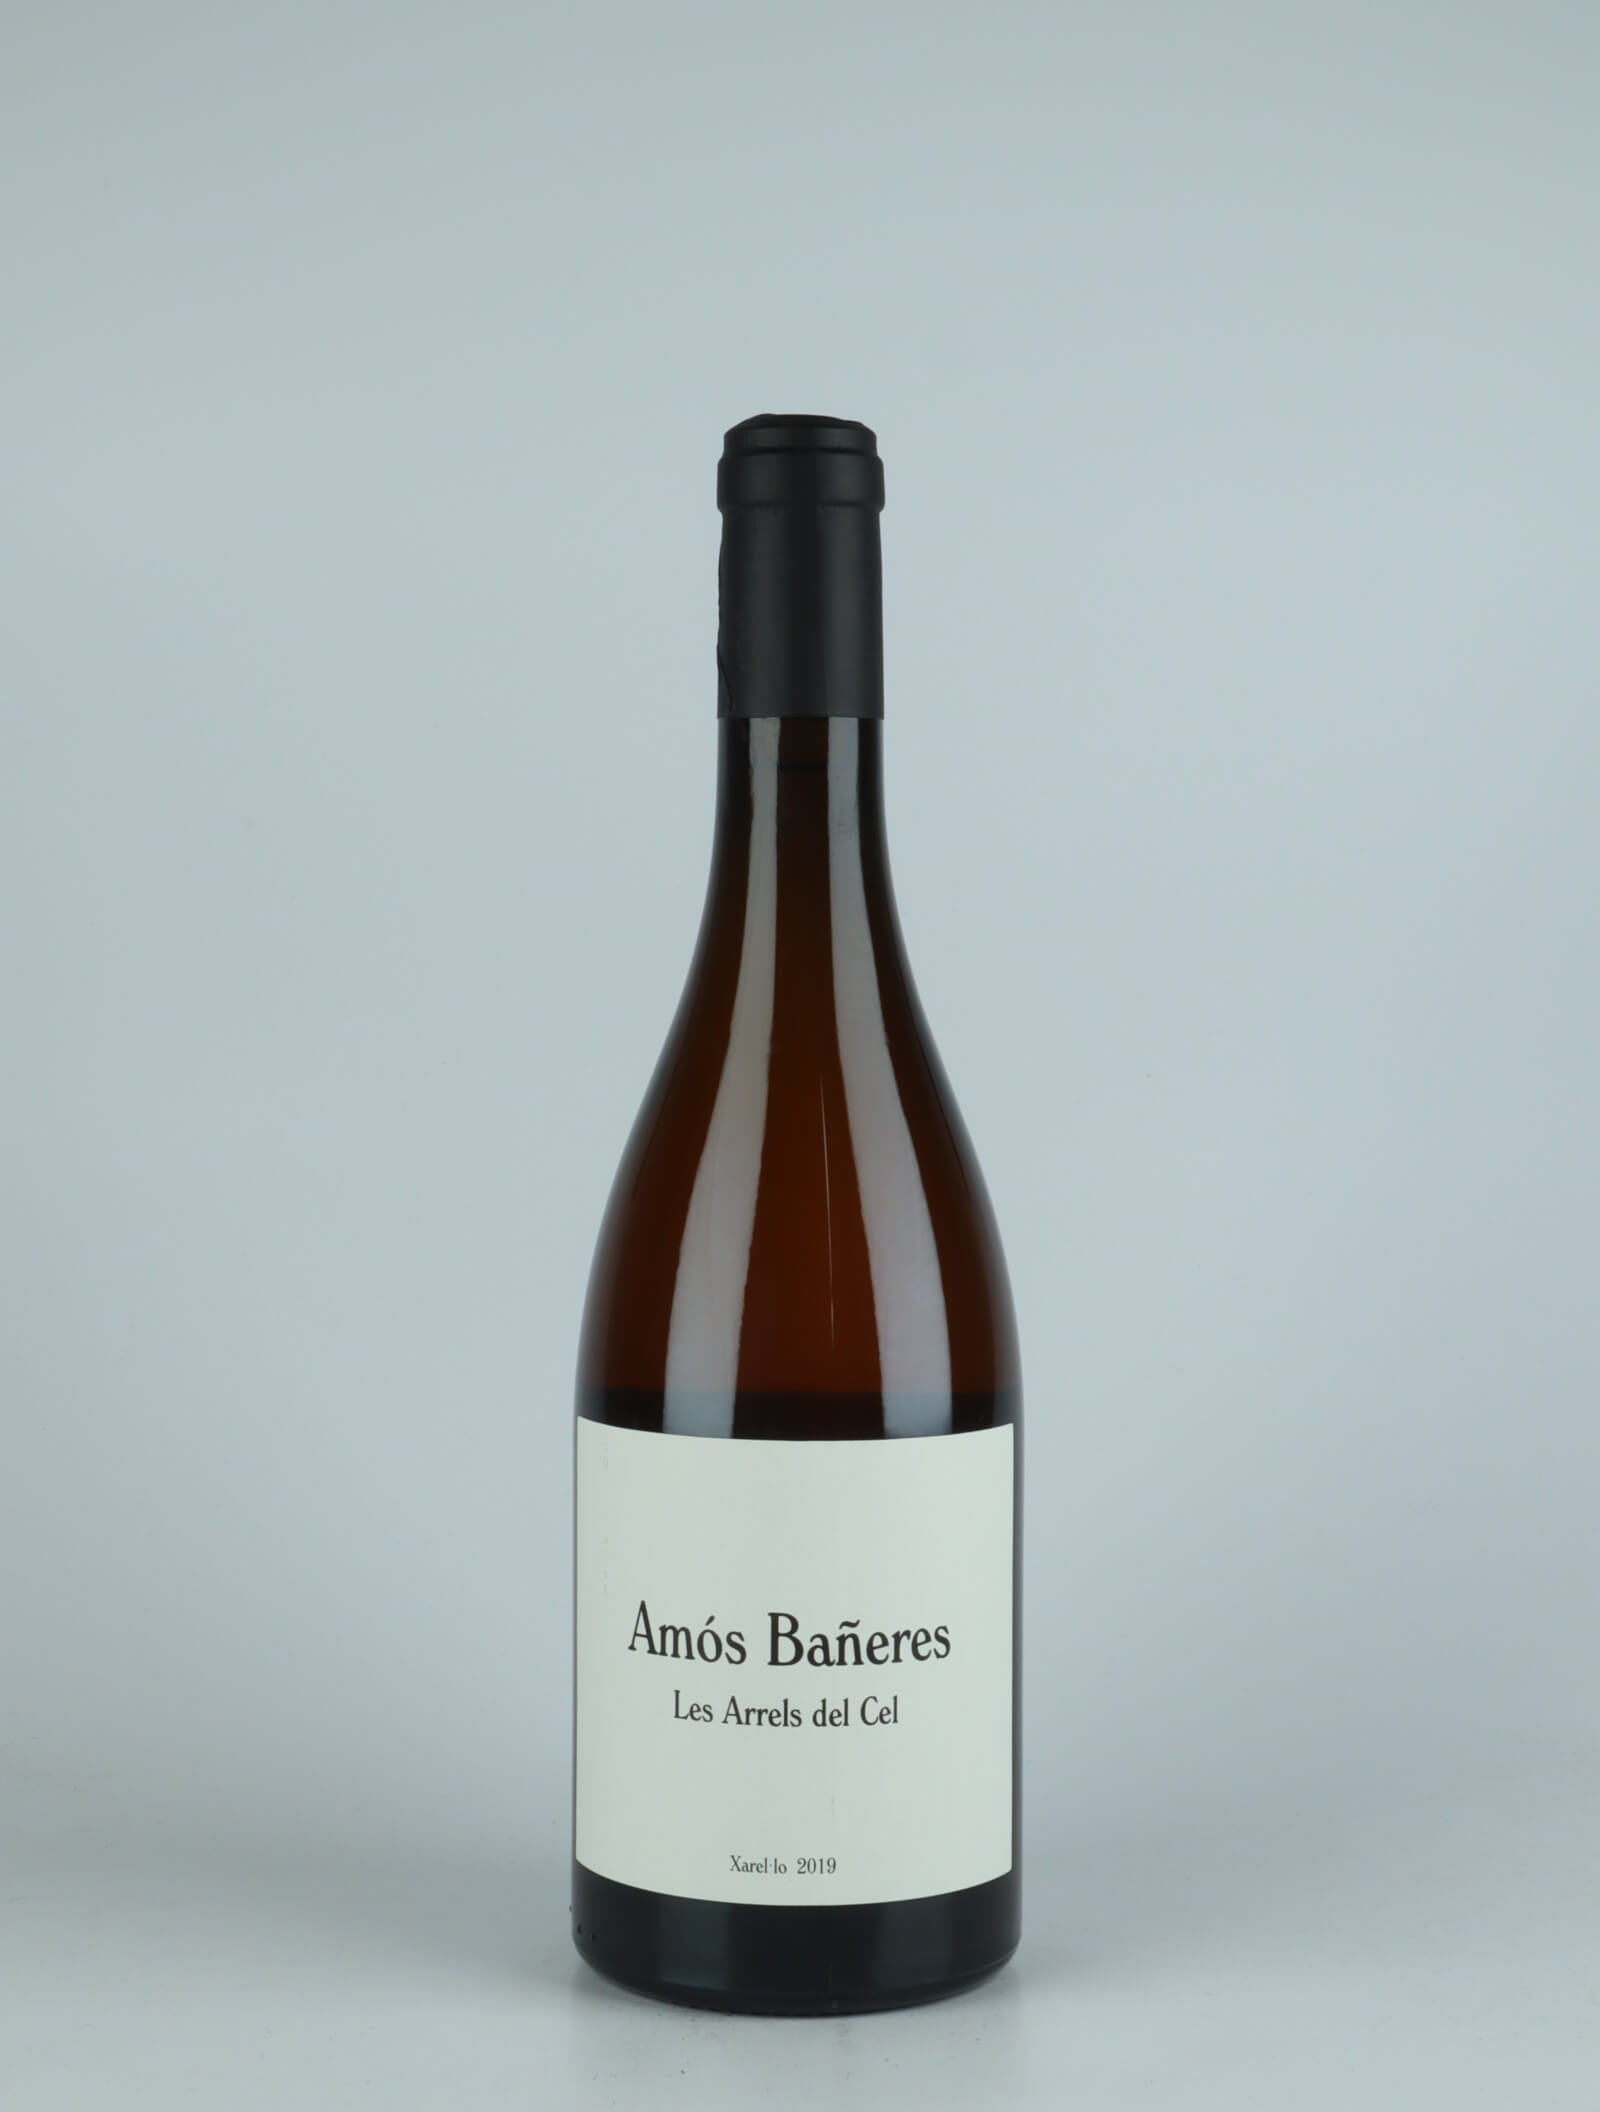 A bottle 2019 Les Arrels del Cel White wine from Amós Bañeres, Penedès in Spain